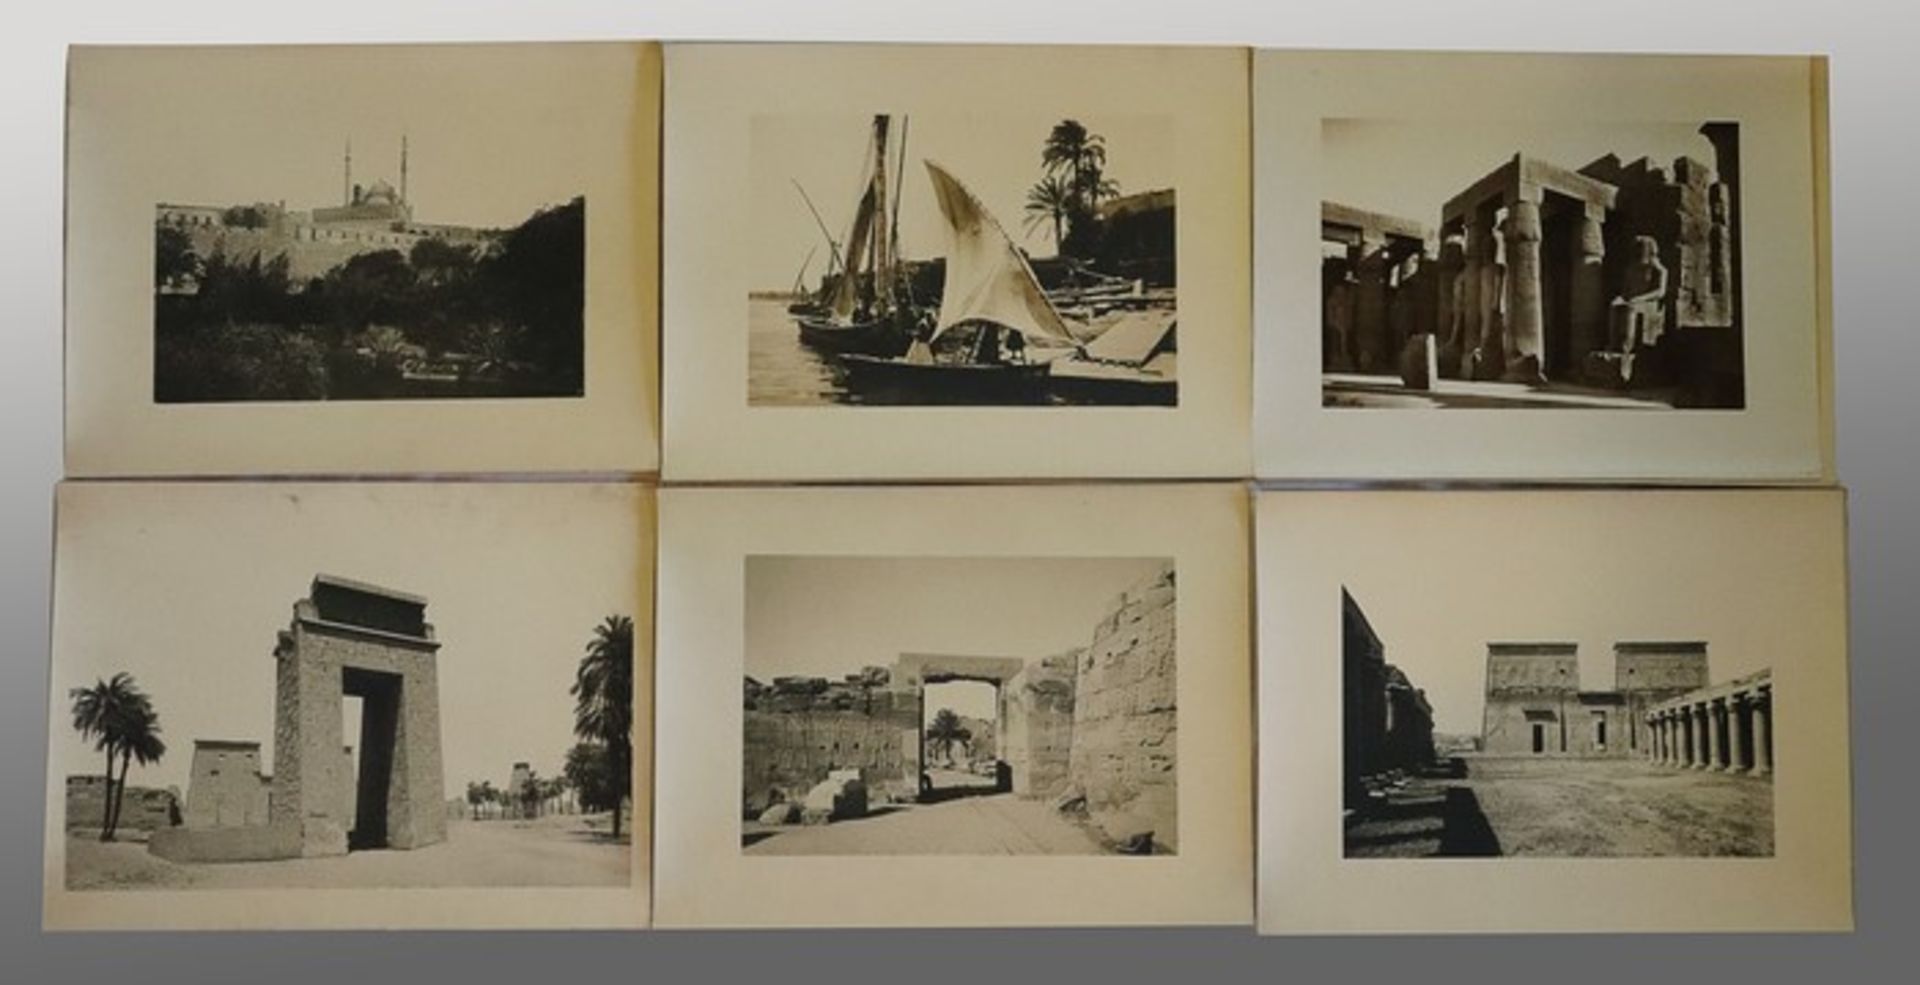 Unsigniert - Fotografienum 1930, 17 s/w Fotografien auf fester Pappe, "Ansichten von Ägypten", 5x